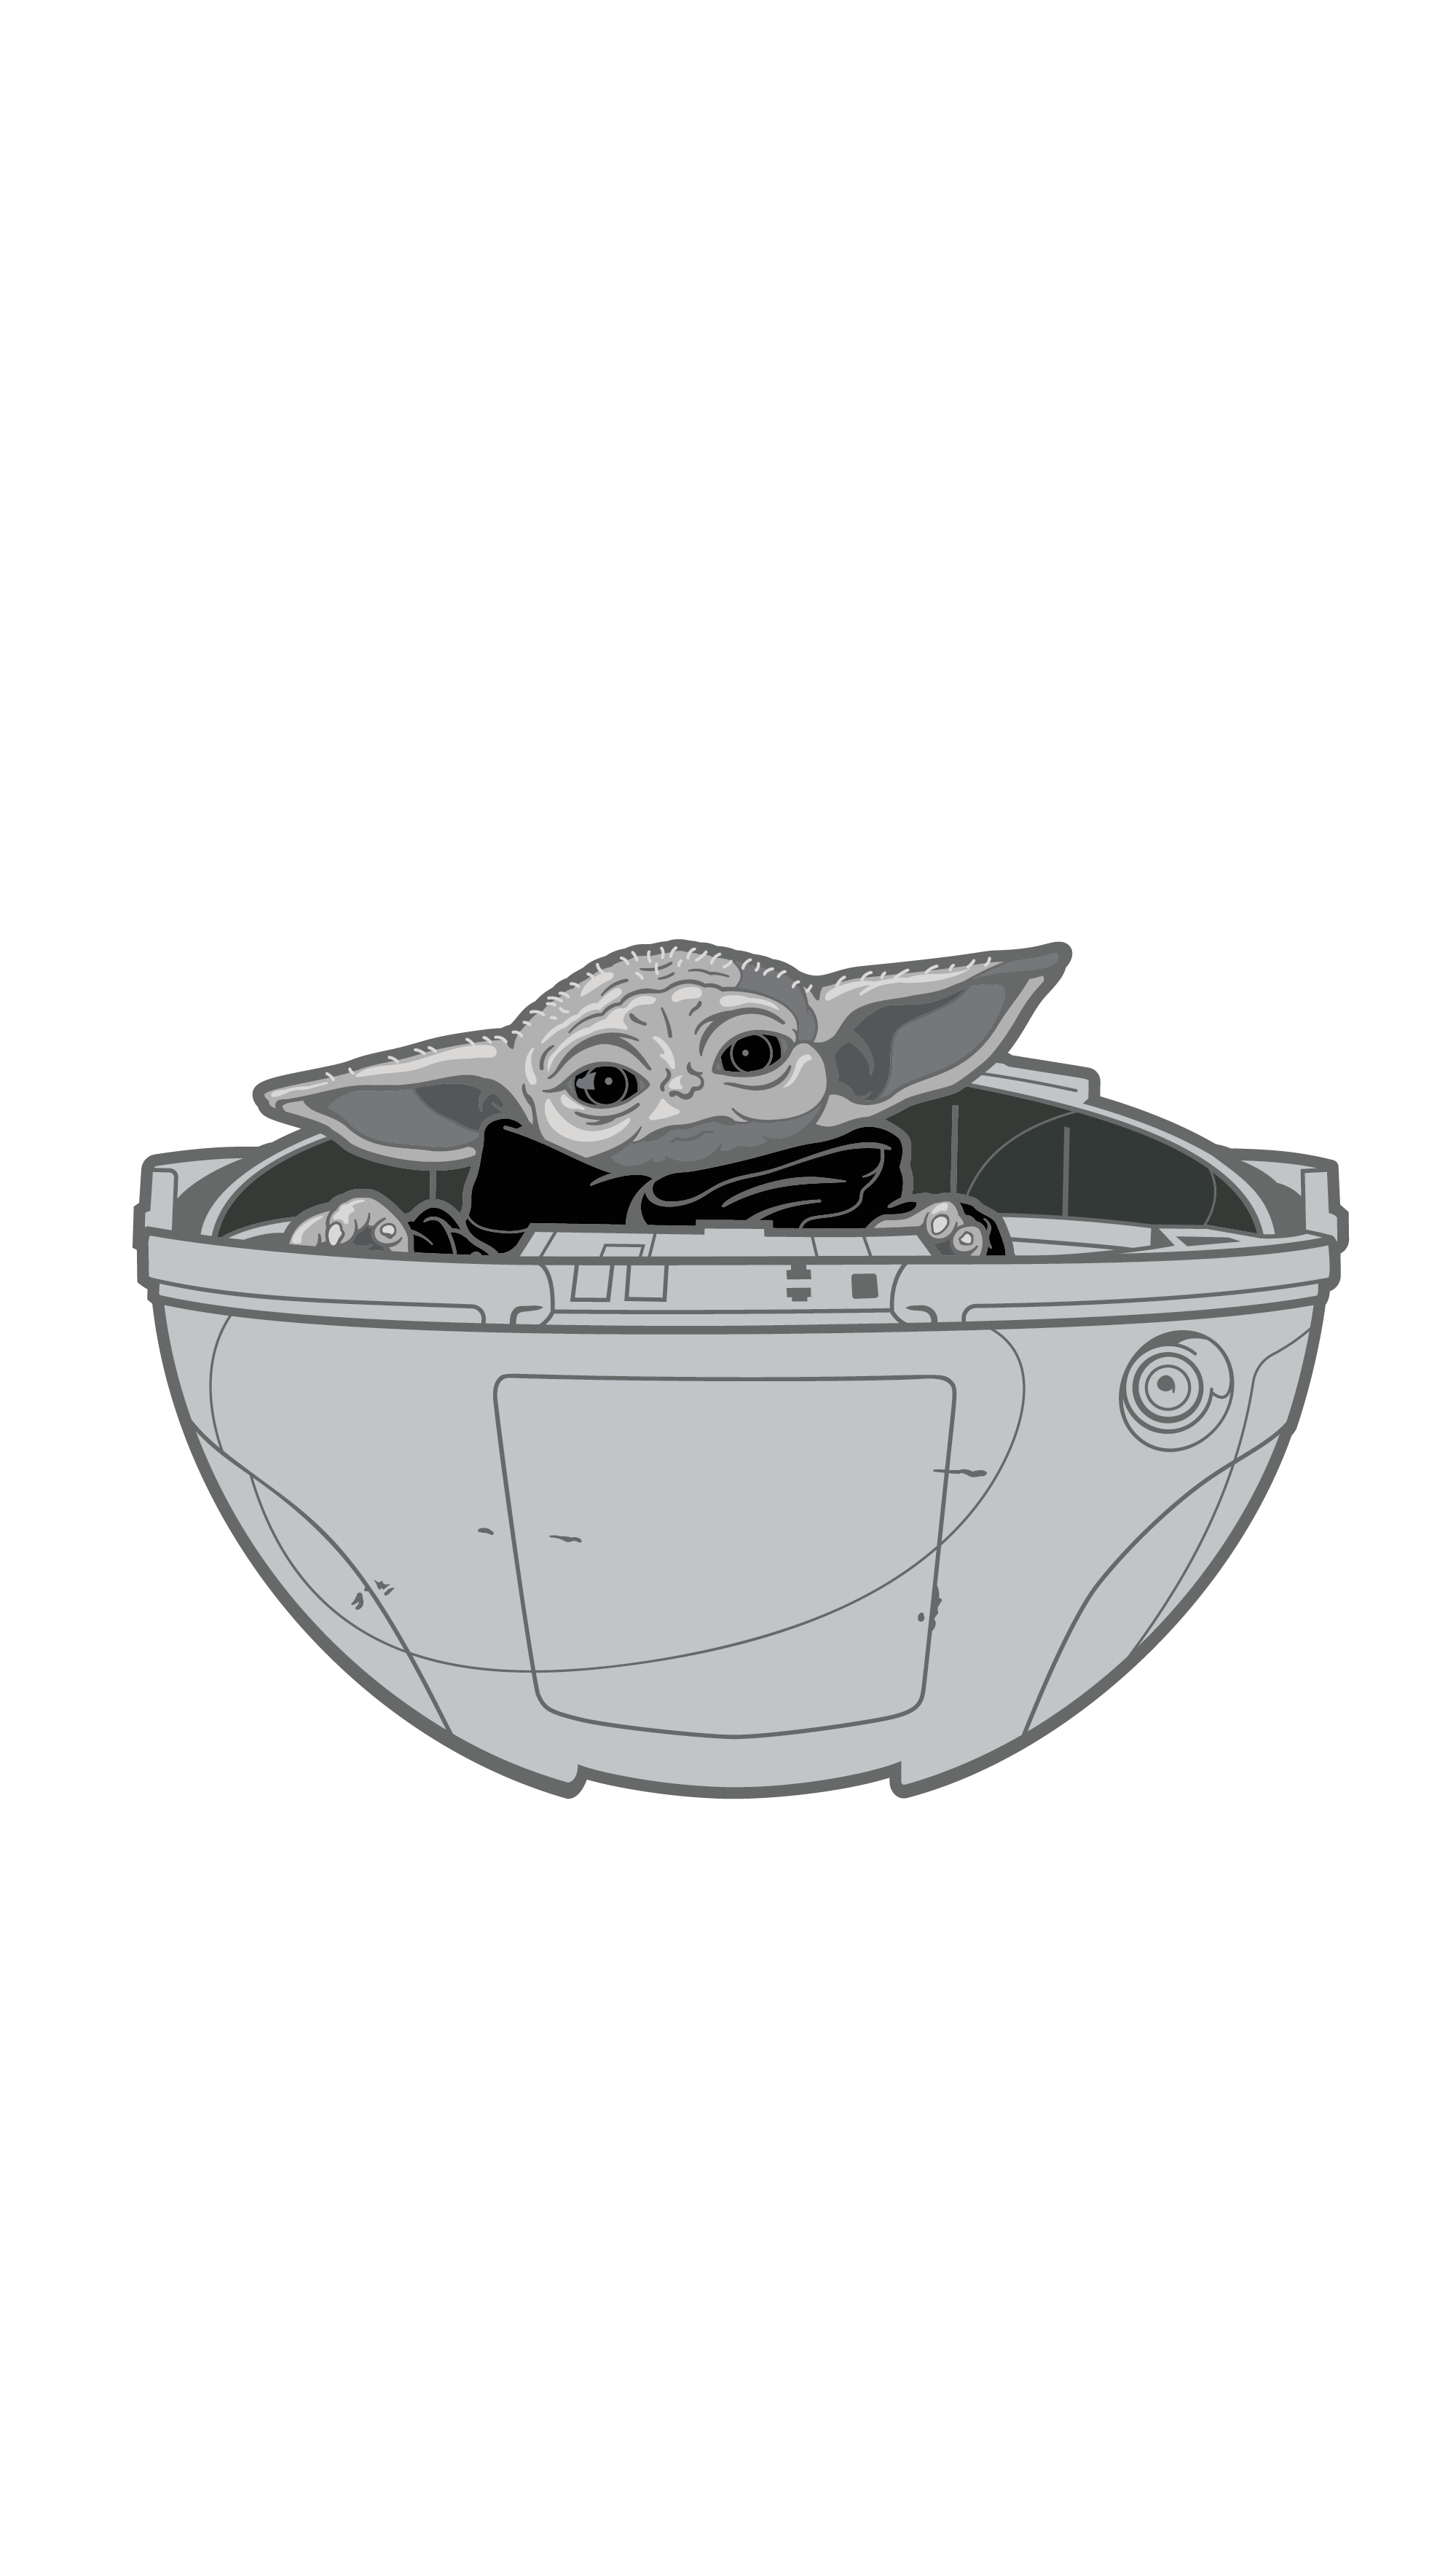 The Mandalorian Baby Yoda Grogu Pin Button ✪